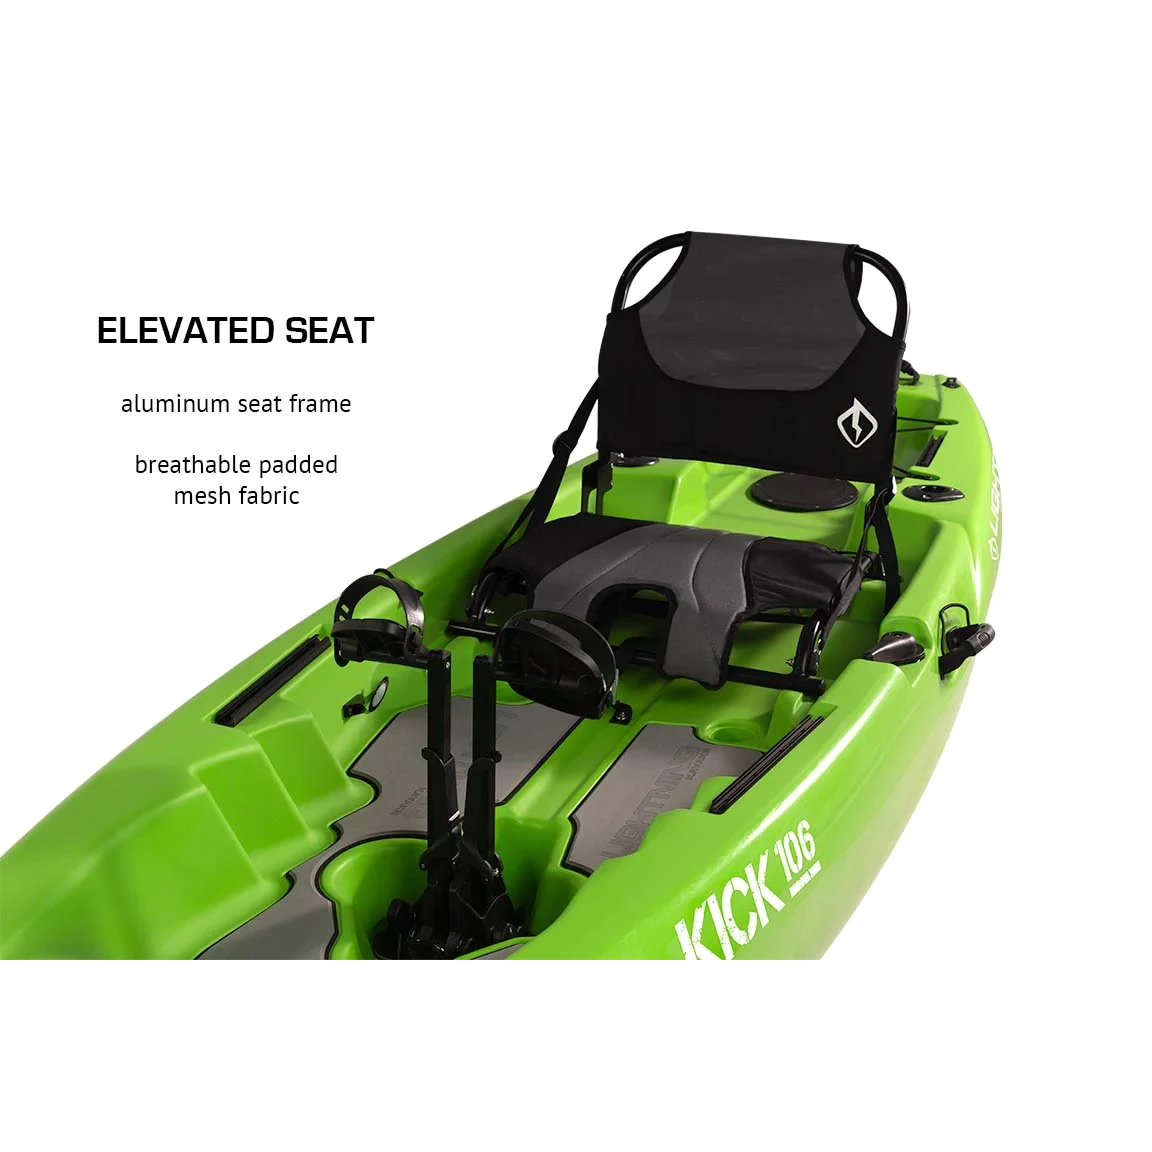 106 Lightning Kick 106 Pedal Drive Fishing Kayak – YAKWORKS